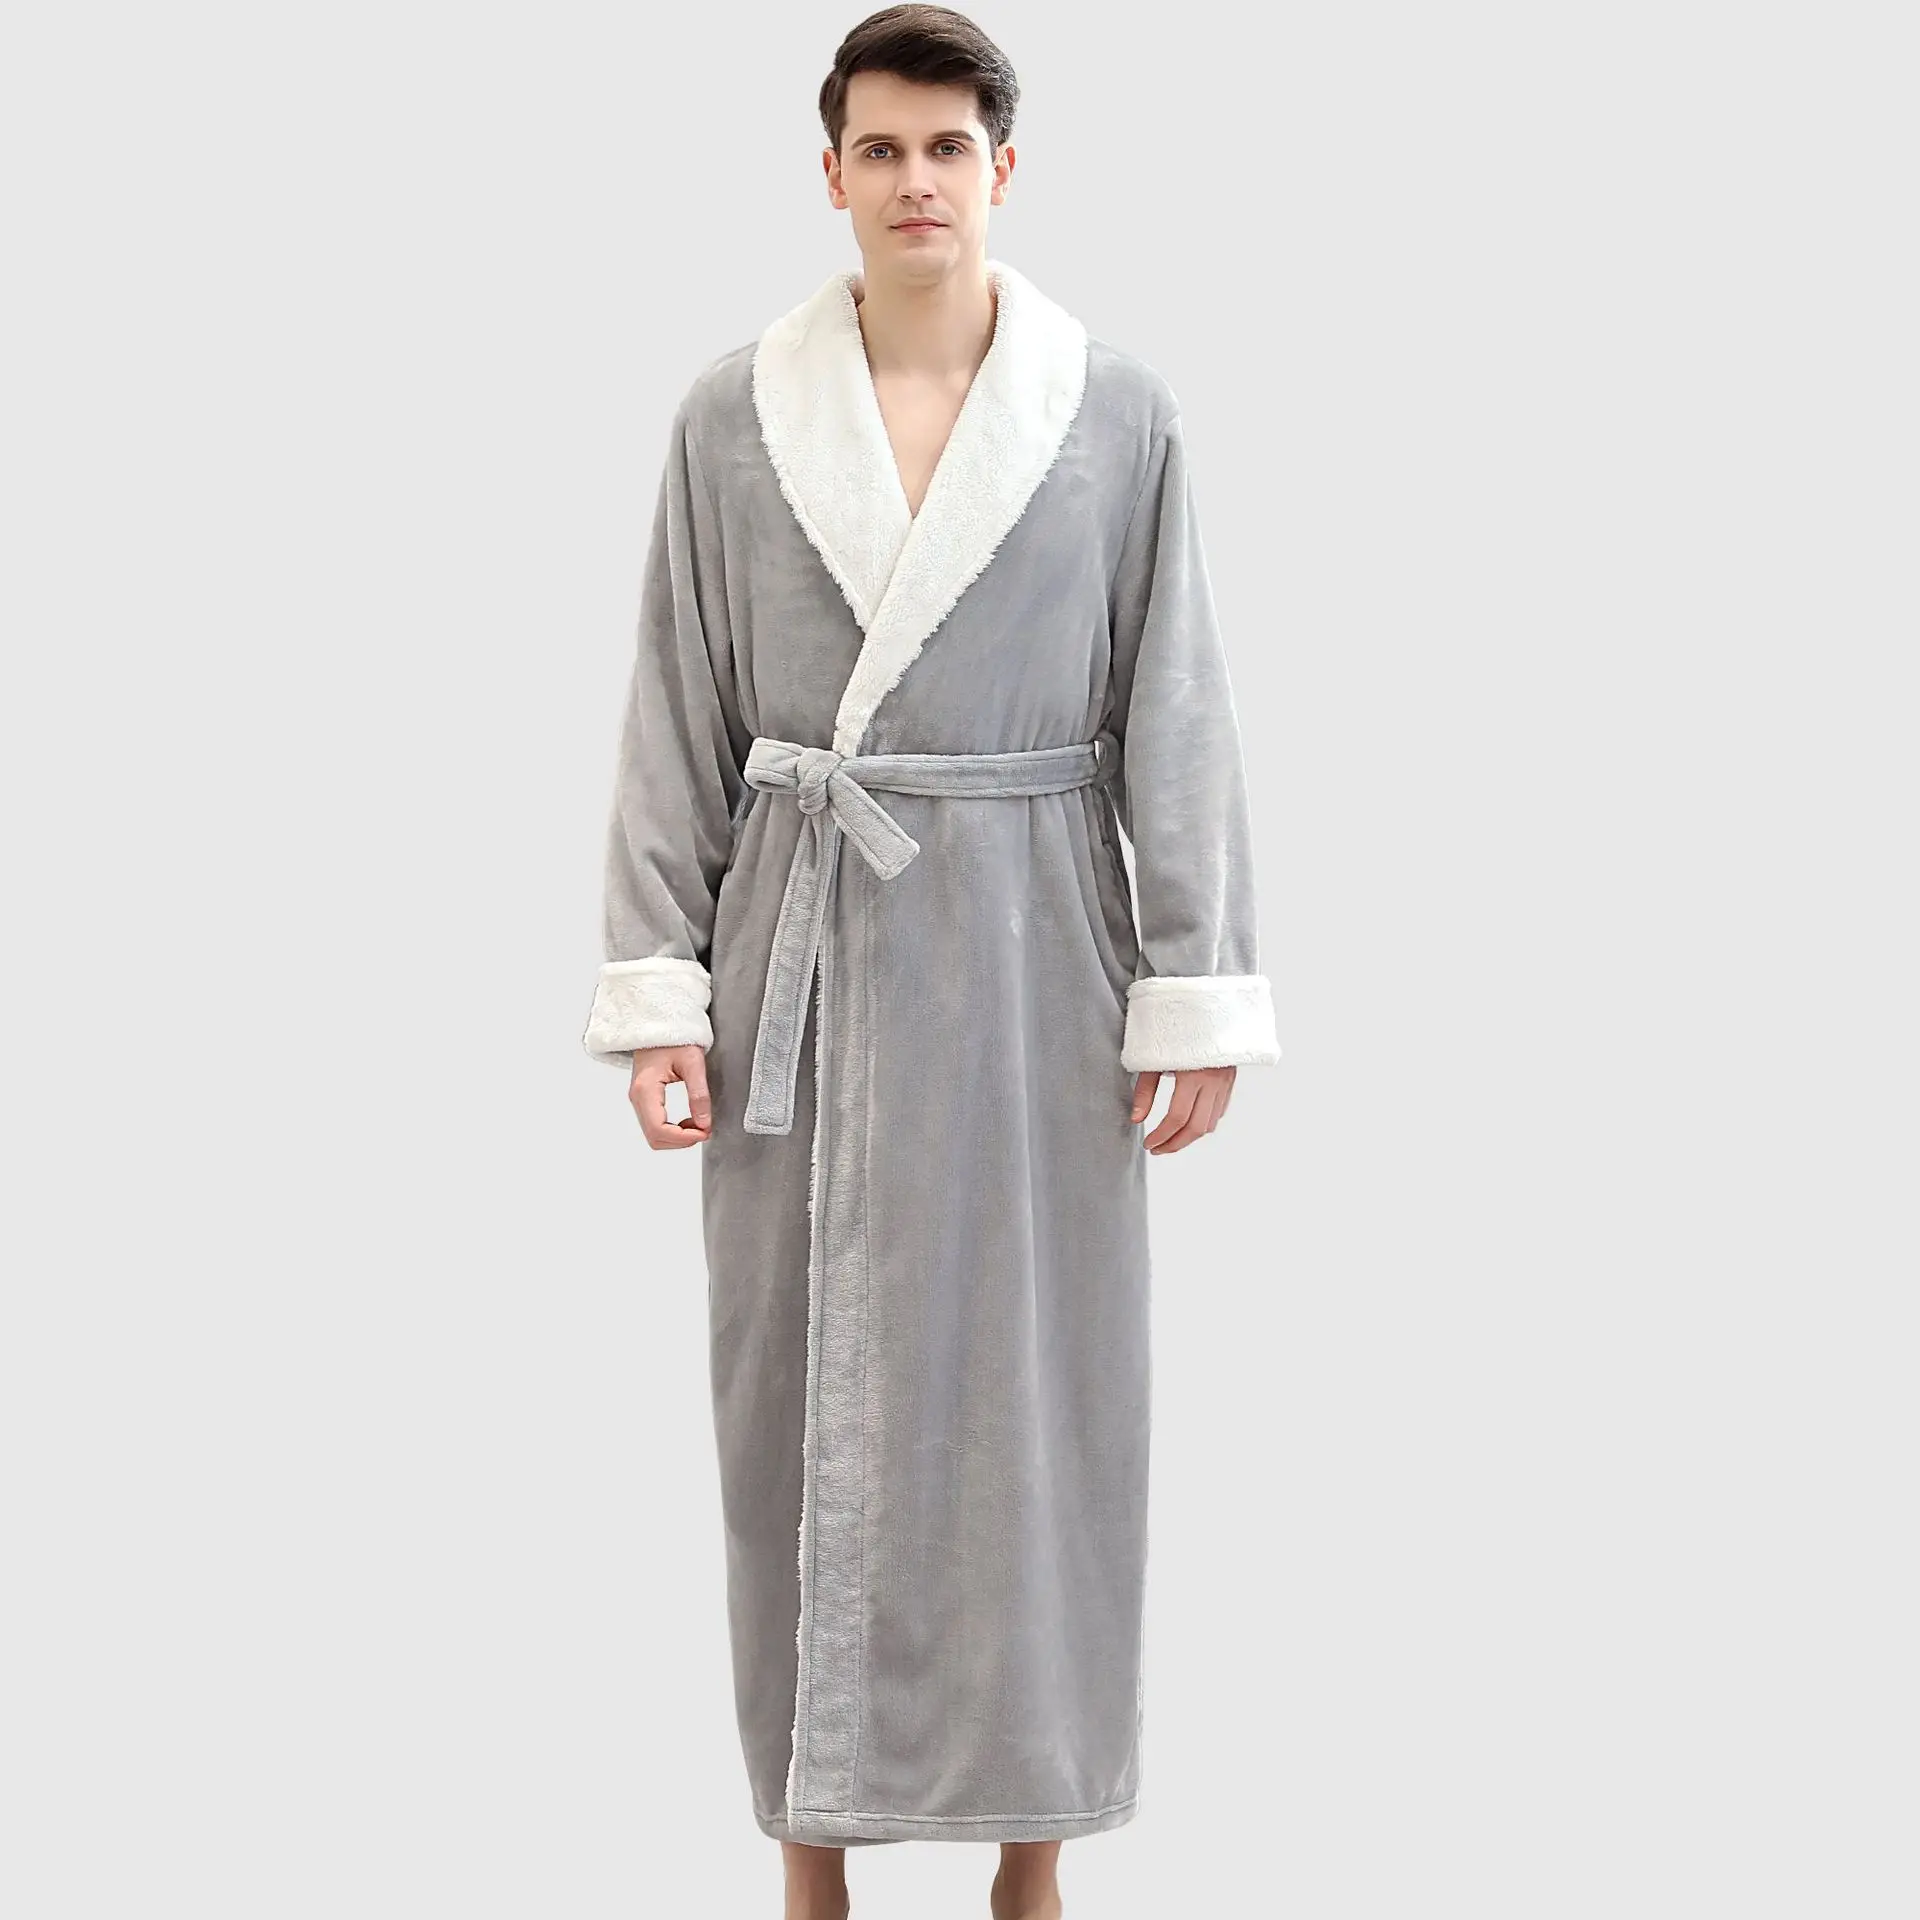 oem服务支持男式睡衣成人加厚保暖个性化浴袍超柔软蓬松法兰绒羊毛